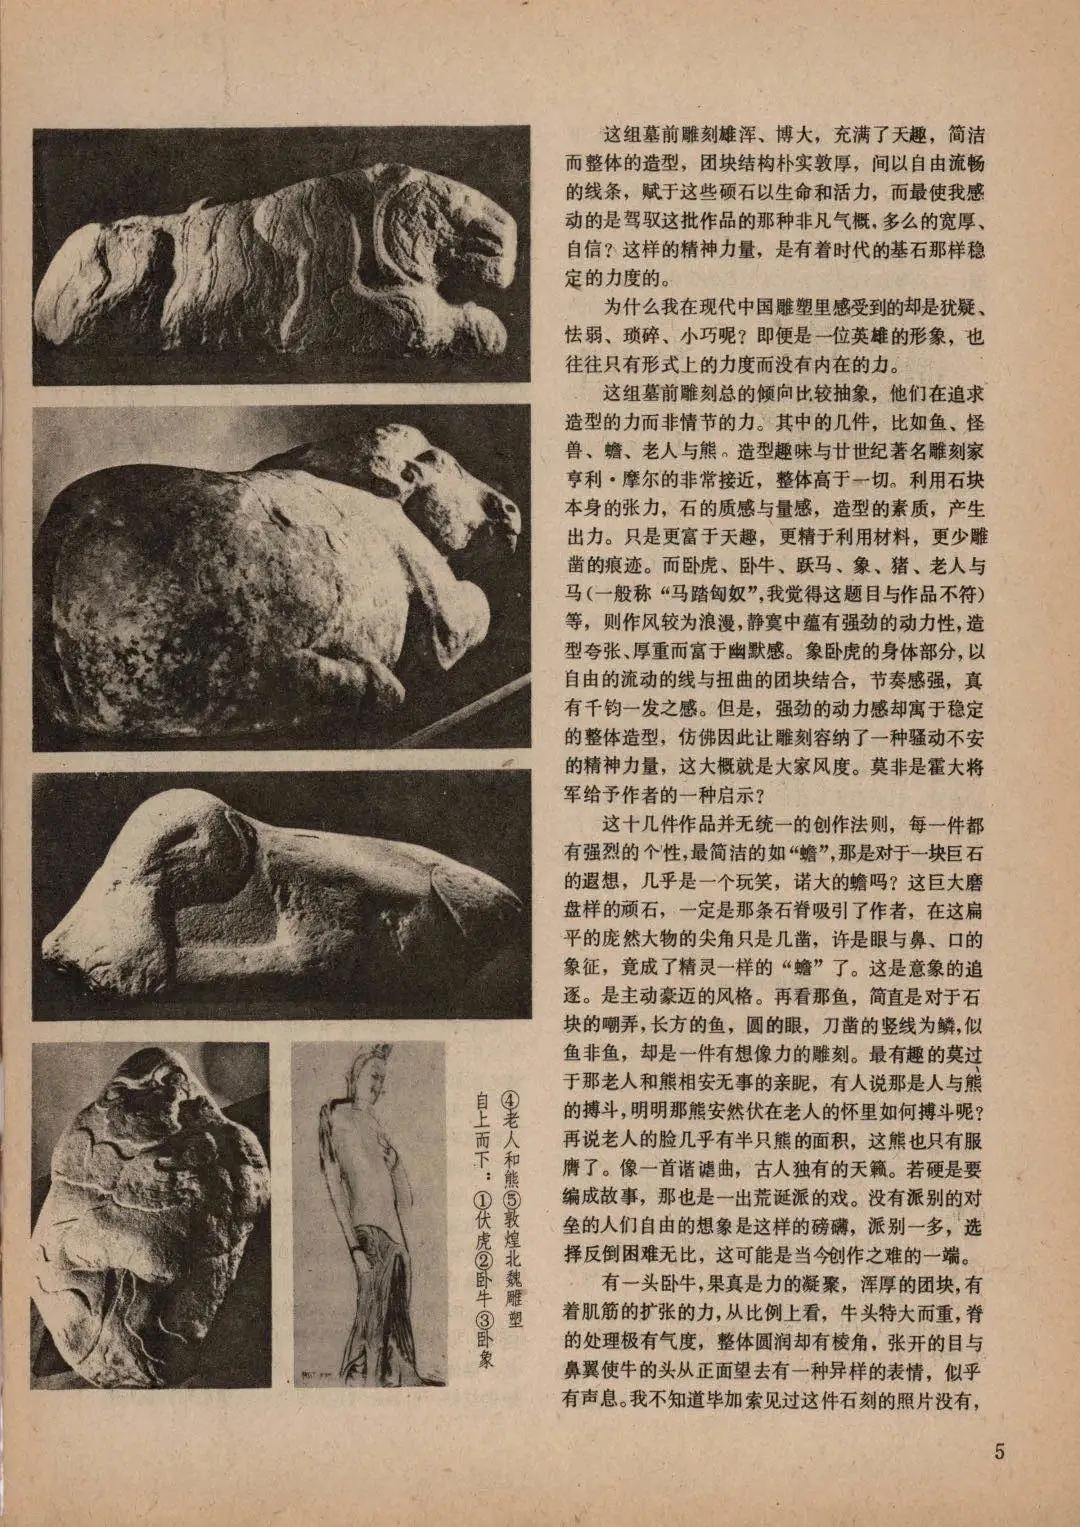 袁运生《魂兮归来》，文章原载于《美术》杂志1982年第一期